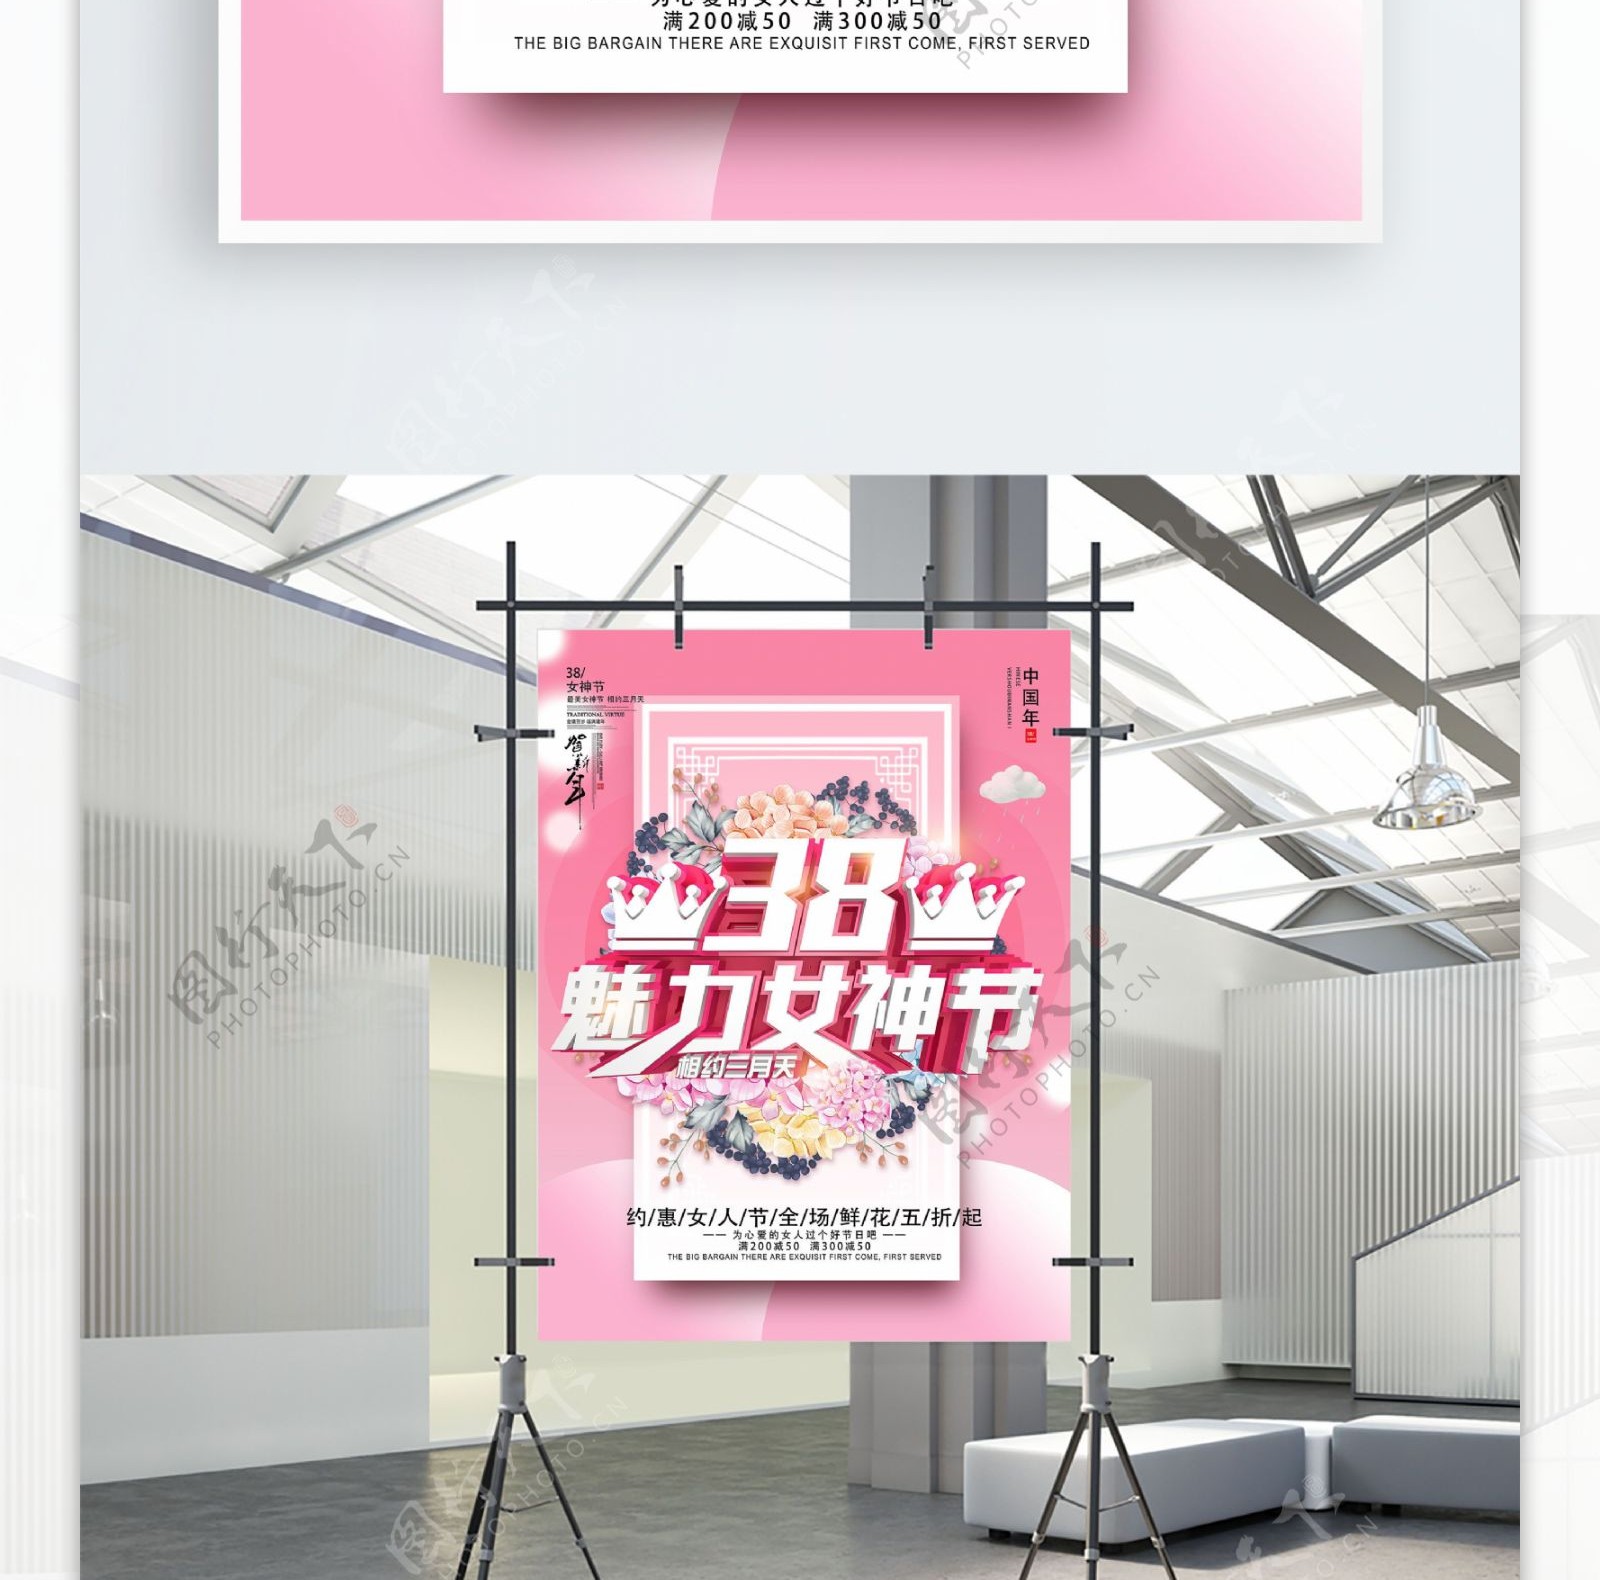 C4D38女神节可爱粉色促销节日海报